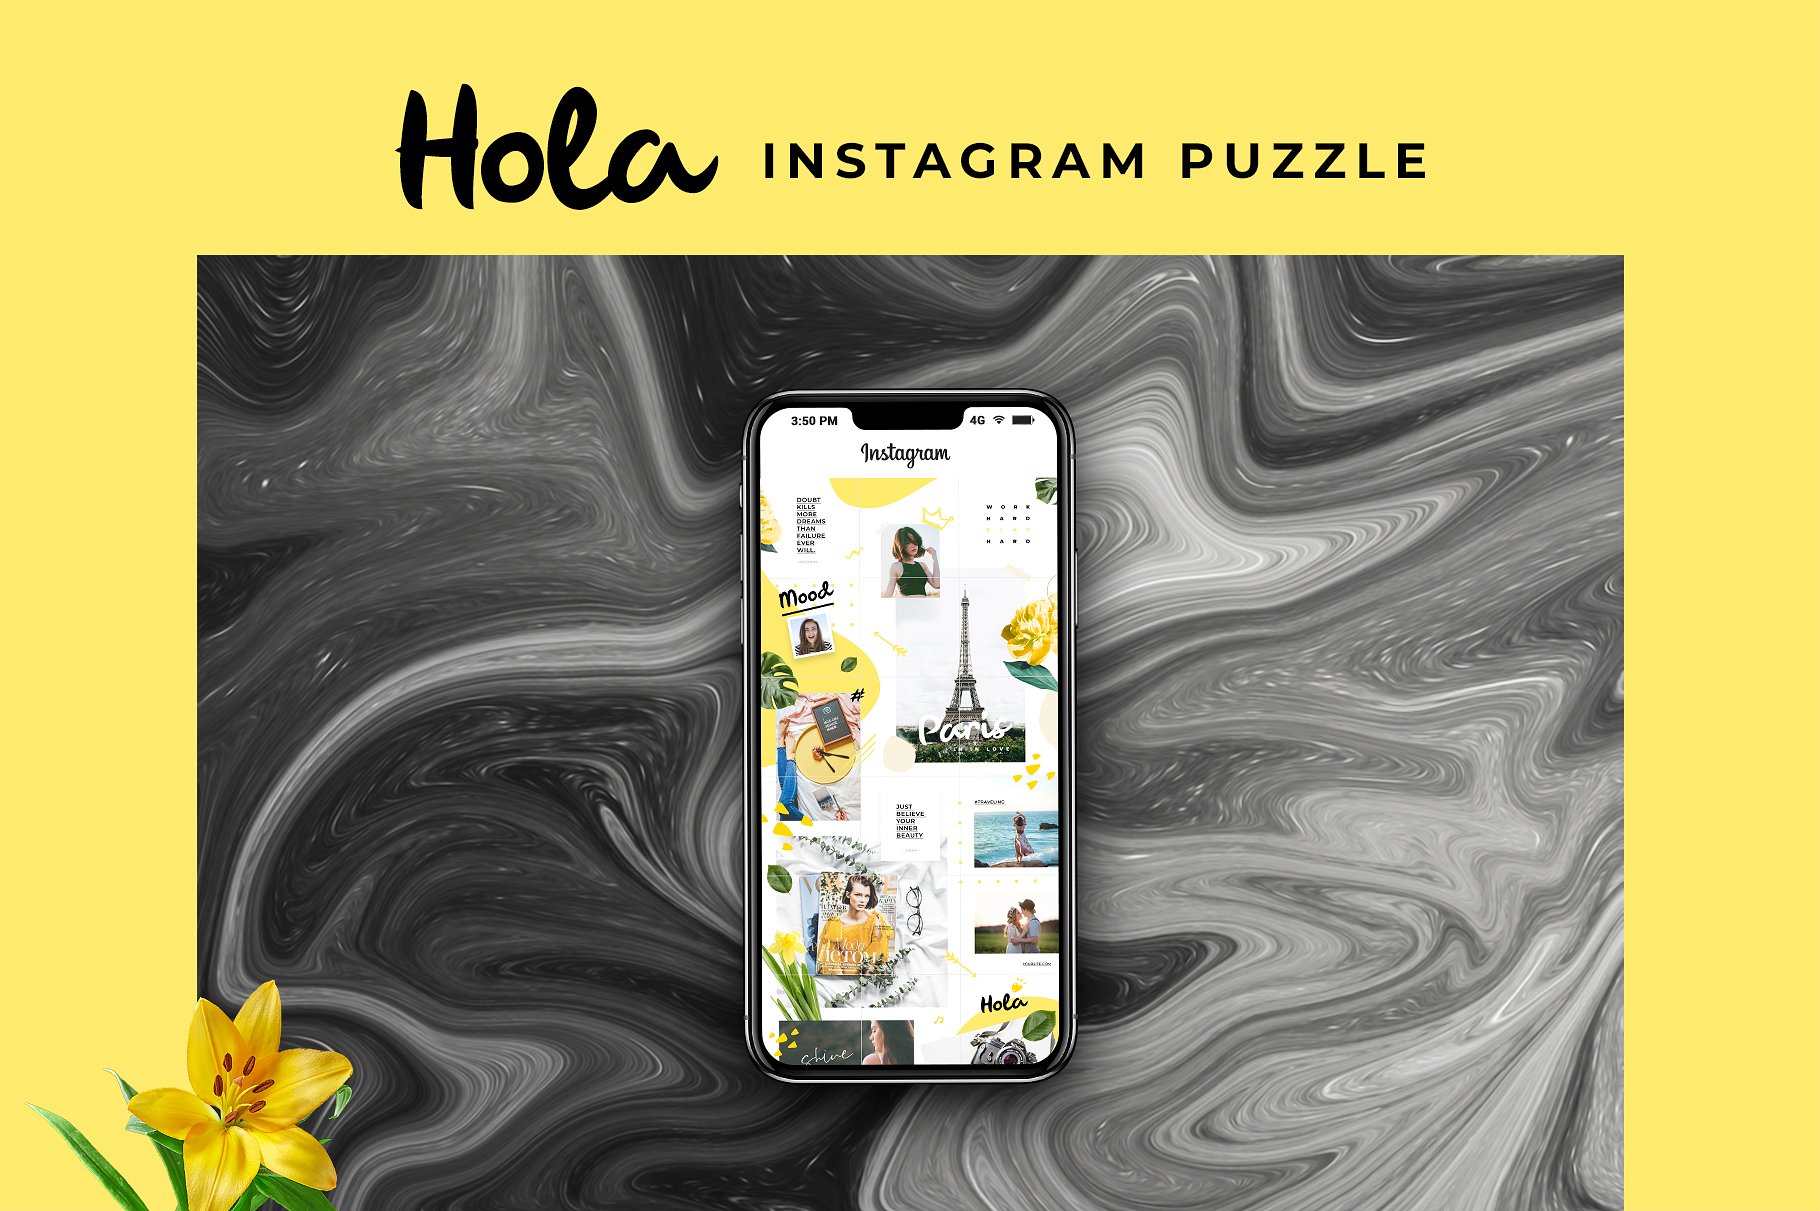 时尚极简的Instagram社交媒体模板普贤居精选 Instagram Puzzle – Hola [psd]插图(2)